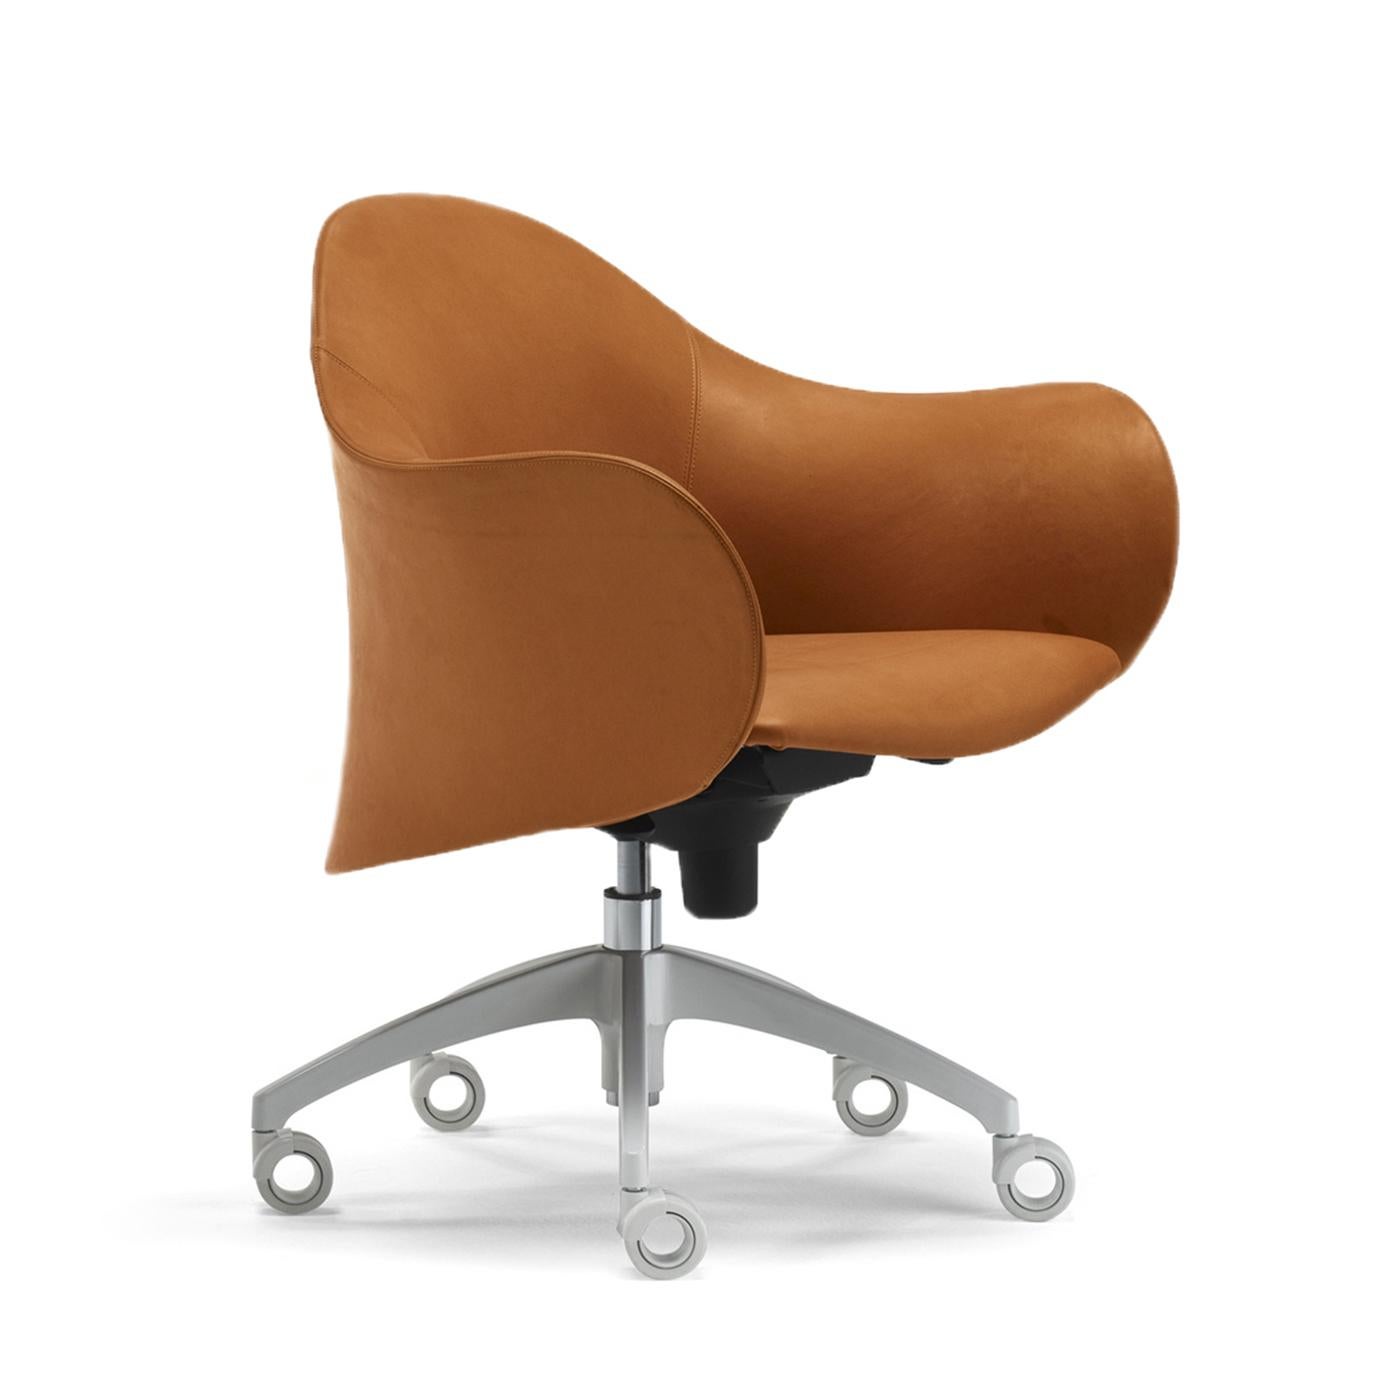 Faisant partie de la collection Lopod, cette chaise est conçue par Giulio Manzoni et présente une coque extérieure structurelle en polyuréthane recouverte de cuir brun naturel doux. La base étoile en aluminium est dotée d'un mécanisme de contrôle de